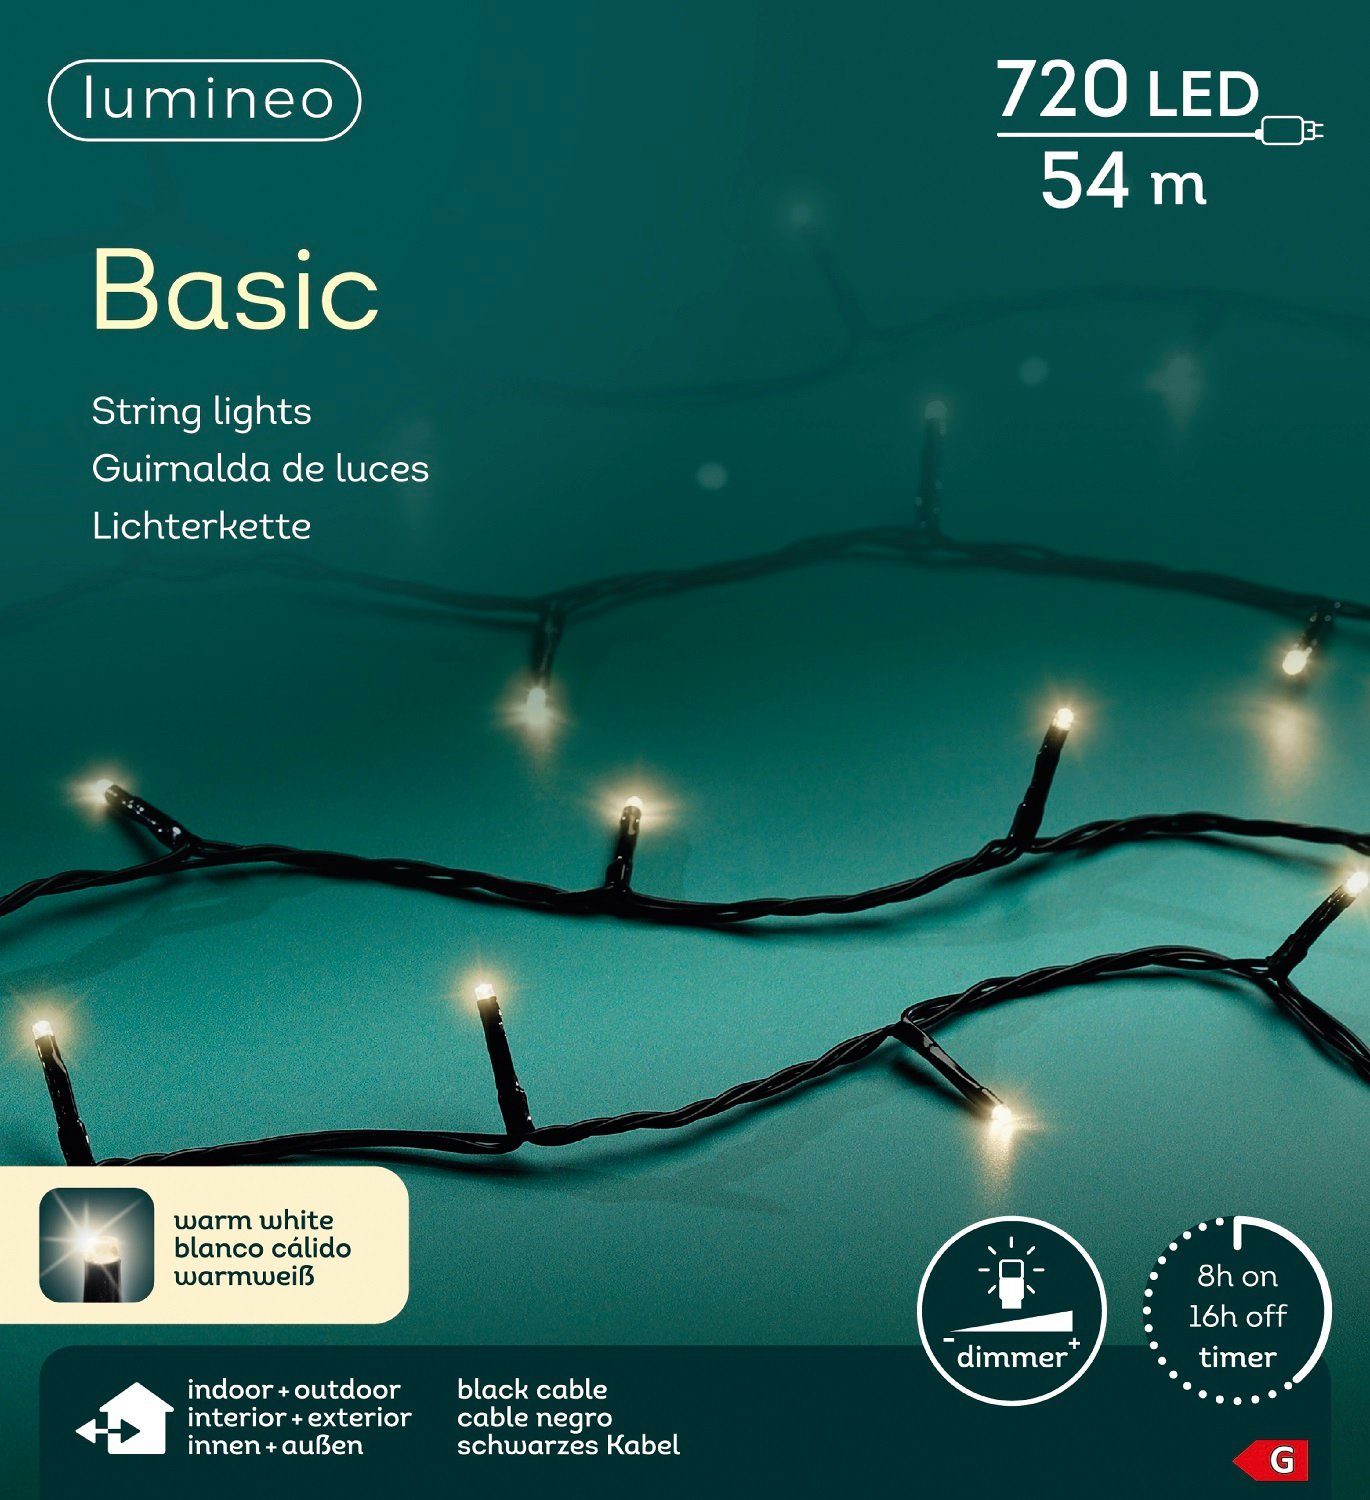 Lumineo LED-Lichterkette Lumineo Lichterkette Basic 720 LED 54 m warm weiß, schwarzes Kabel, Dimmbar, Timer, Indoor, Outdoor